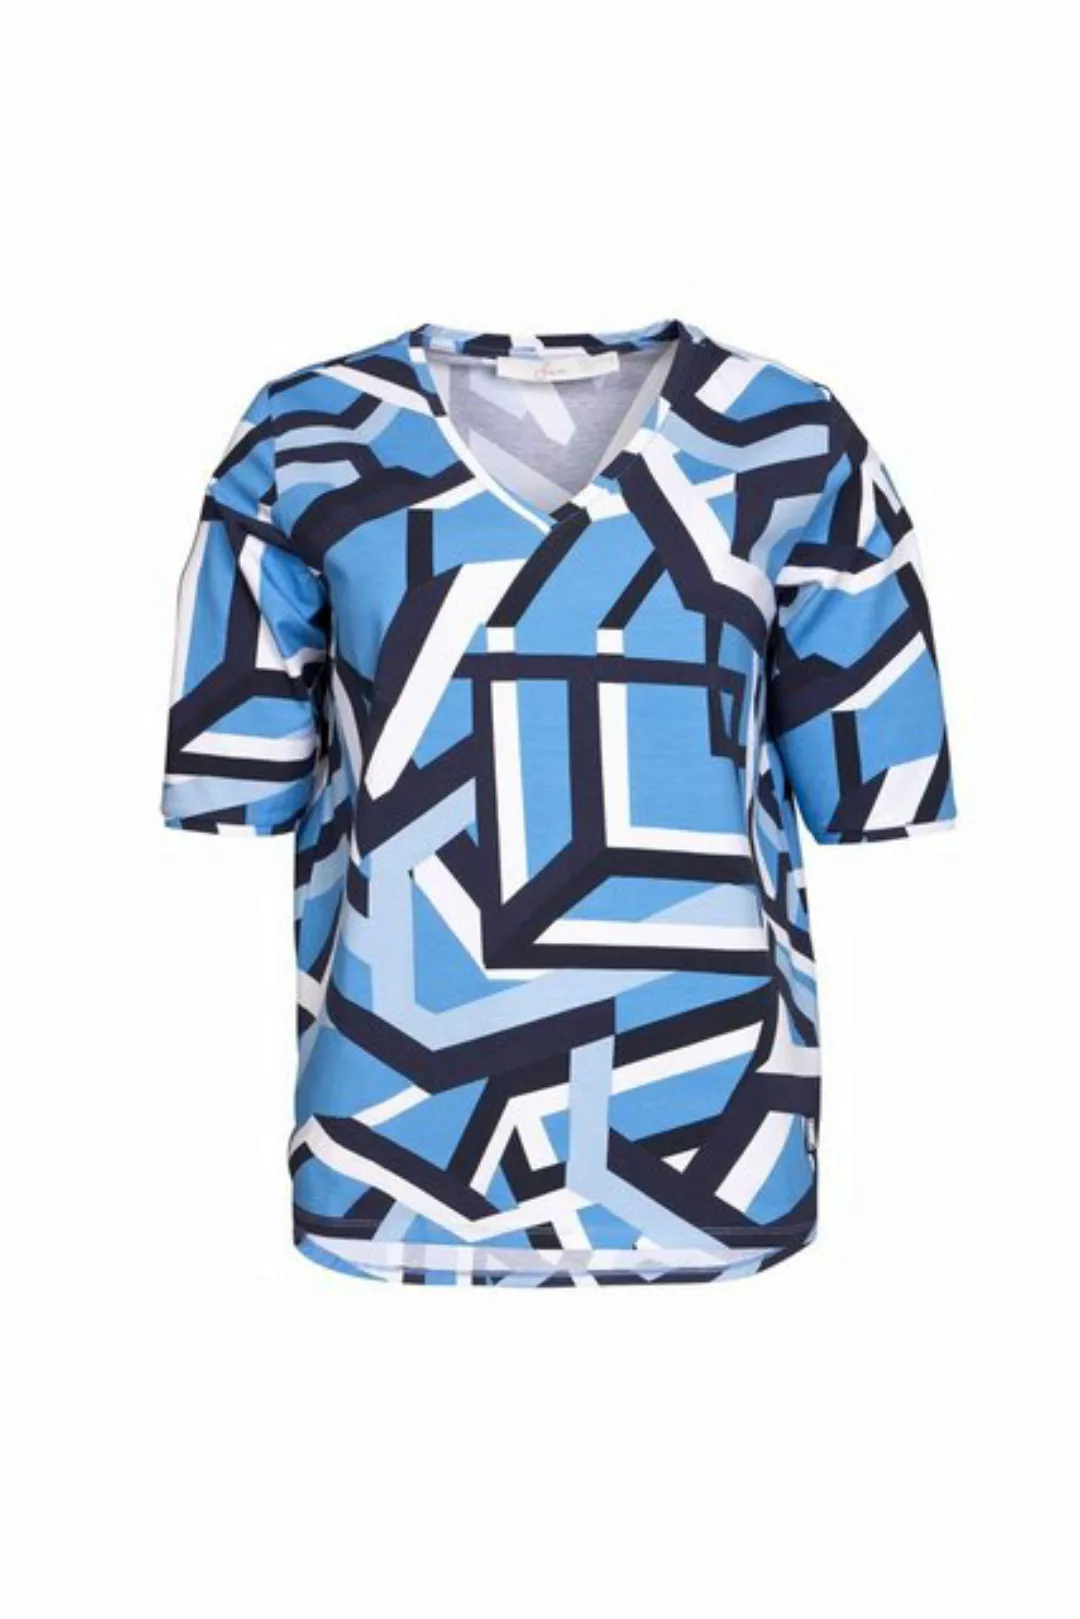 SER T-Shirt Shirt Grafik Design W4240108 auch in großen Größen günstig online kaufen